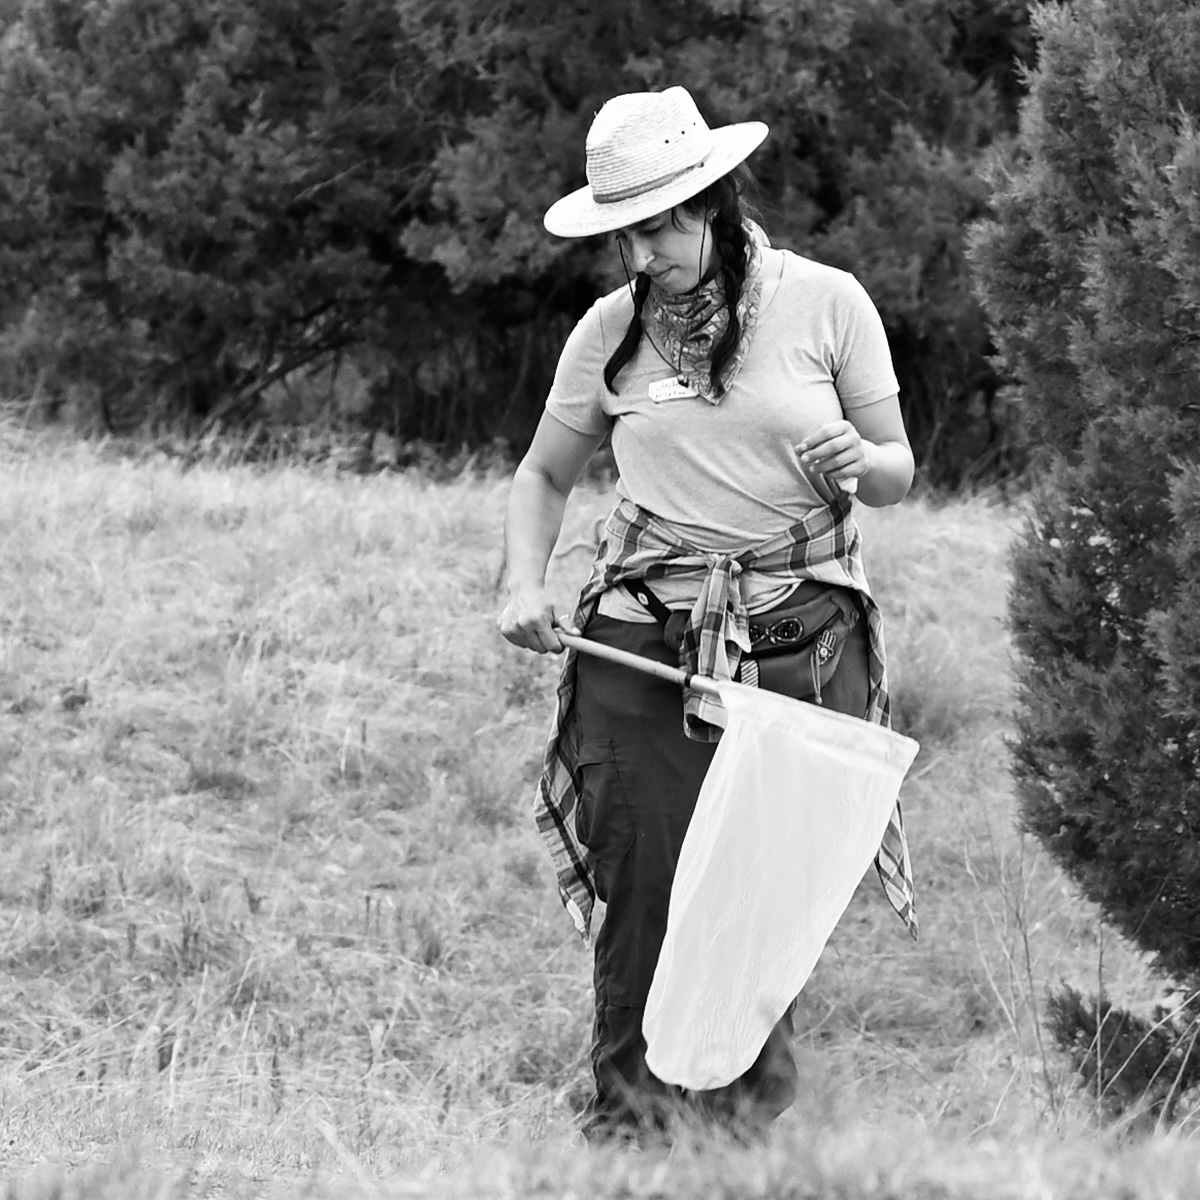 Field crew member Jade McLellan stands in a field, holding a butterfly net.